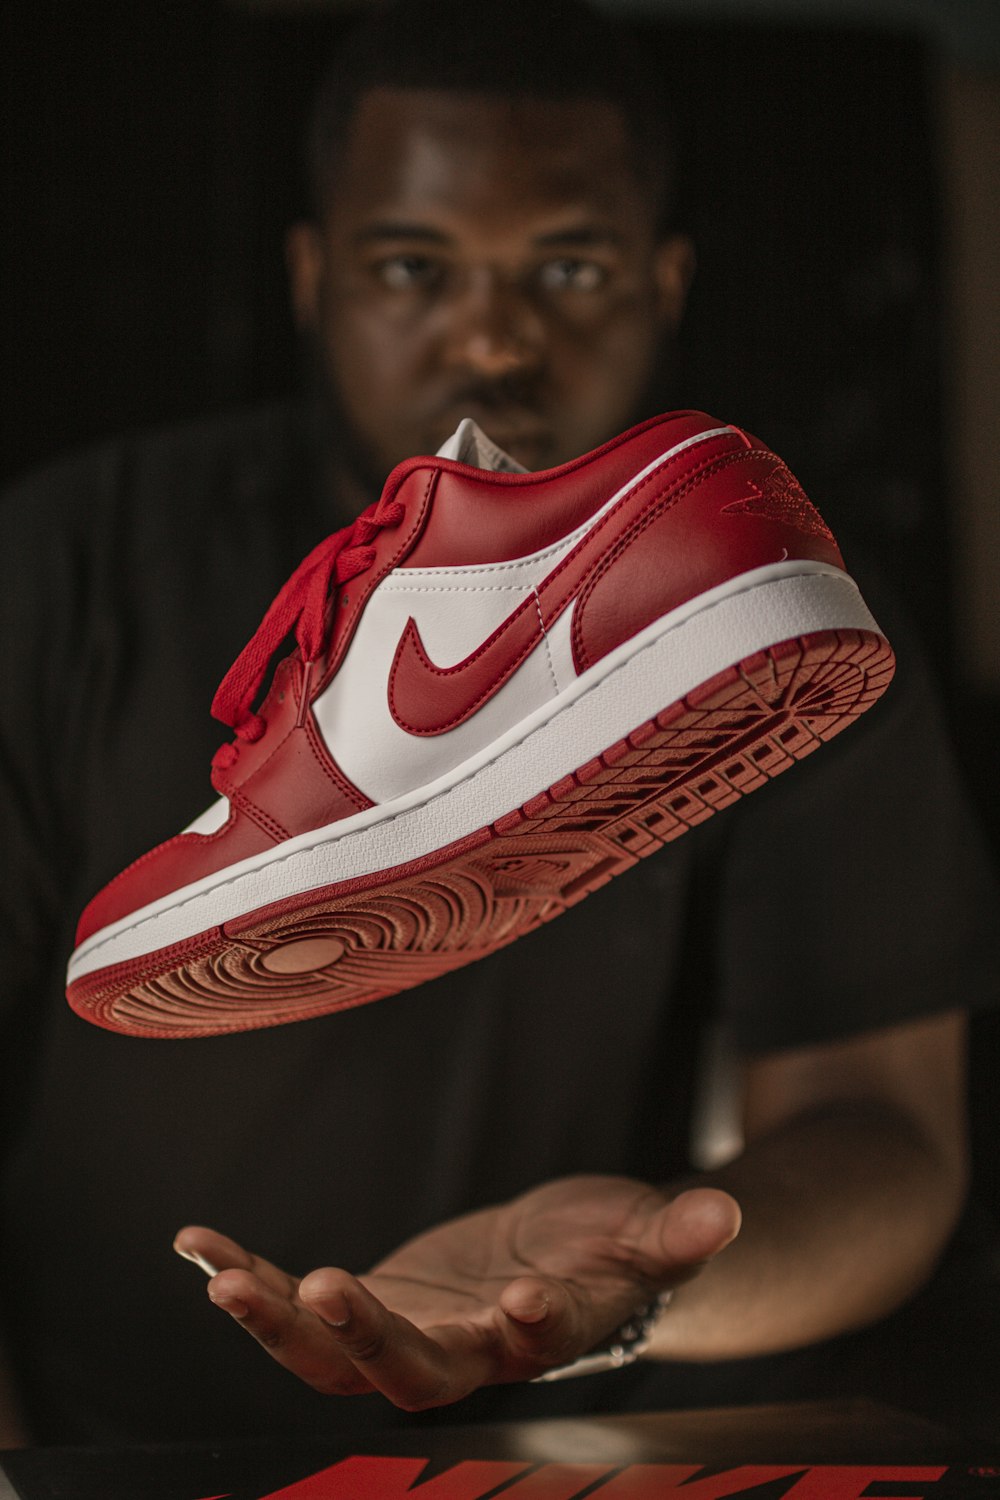 red and white nike athletic shoe photo – Free Black Image on Unsplash